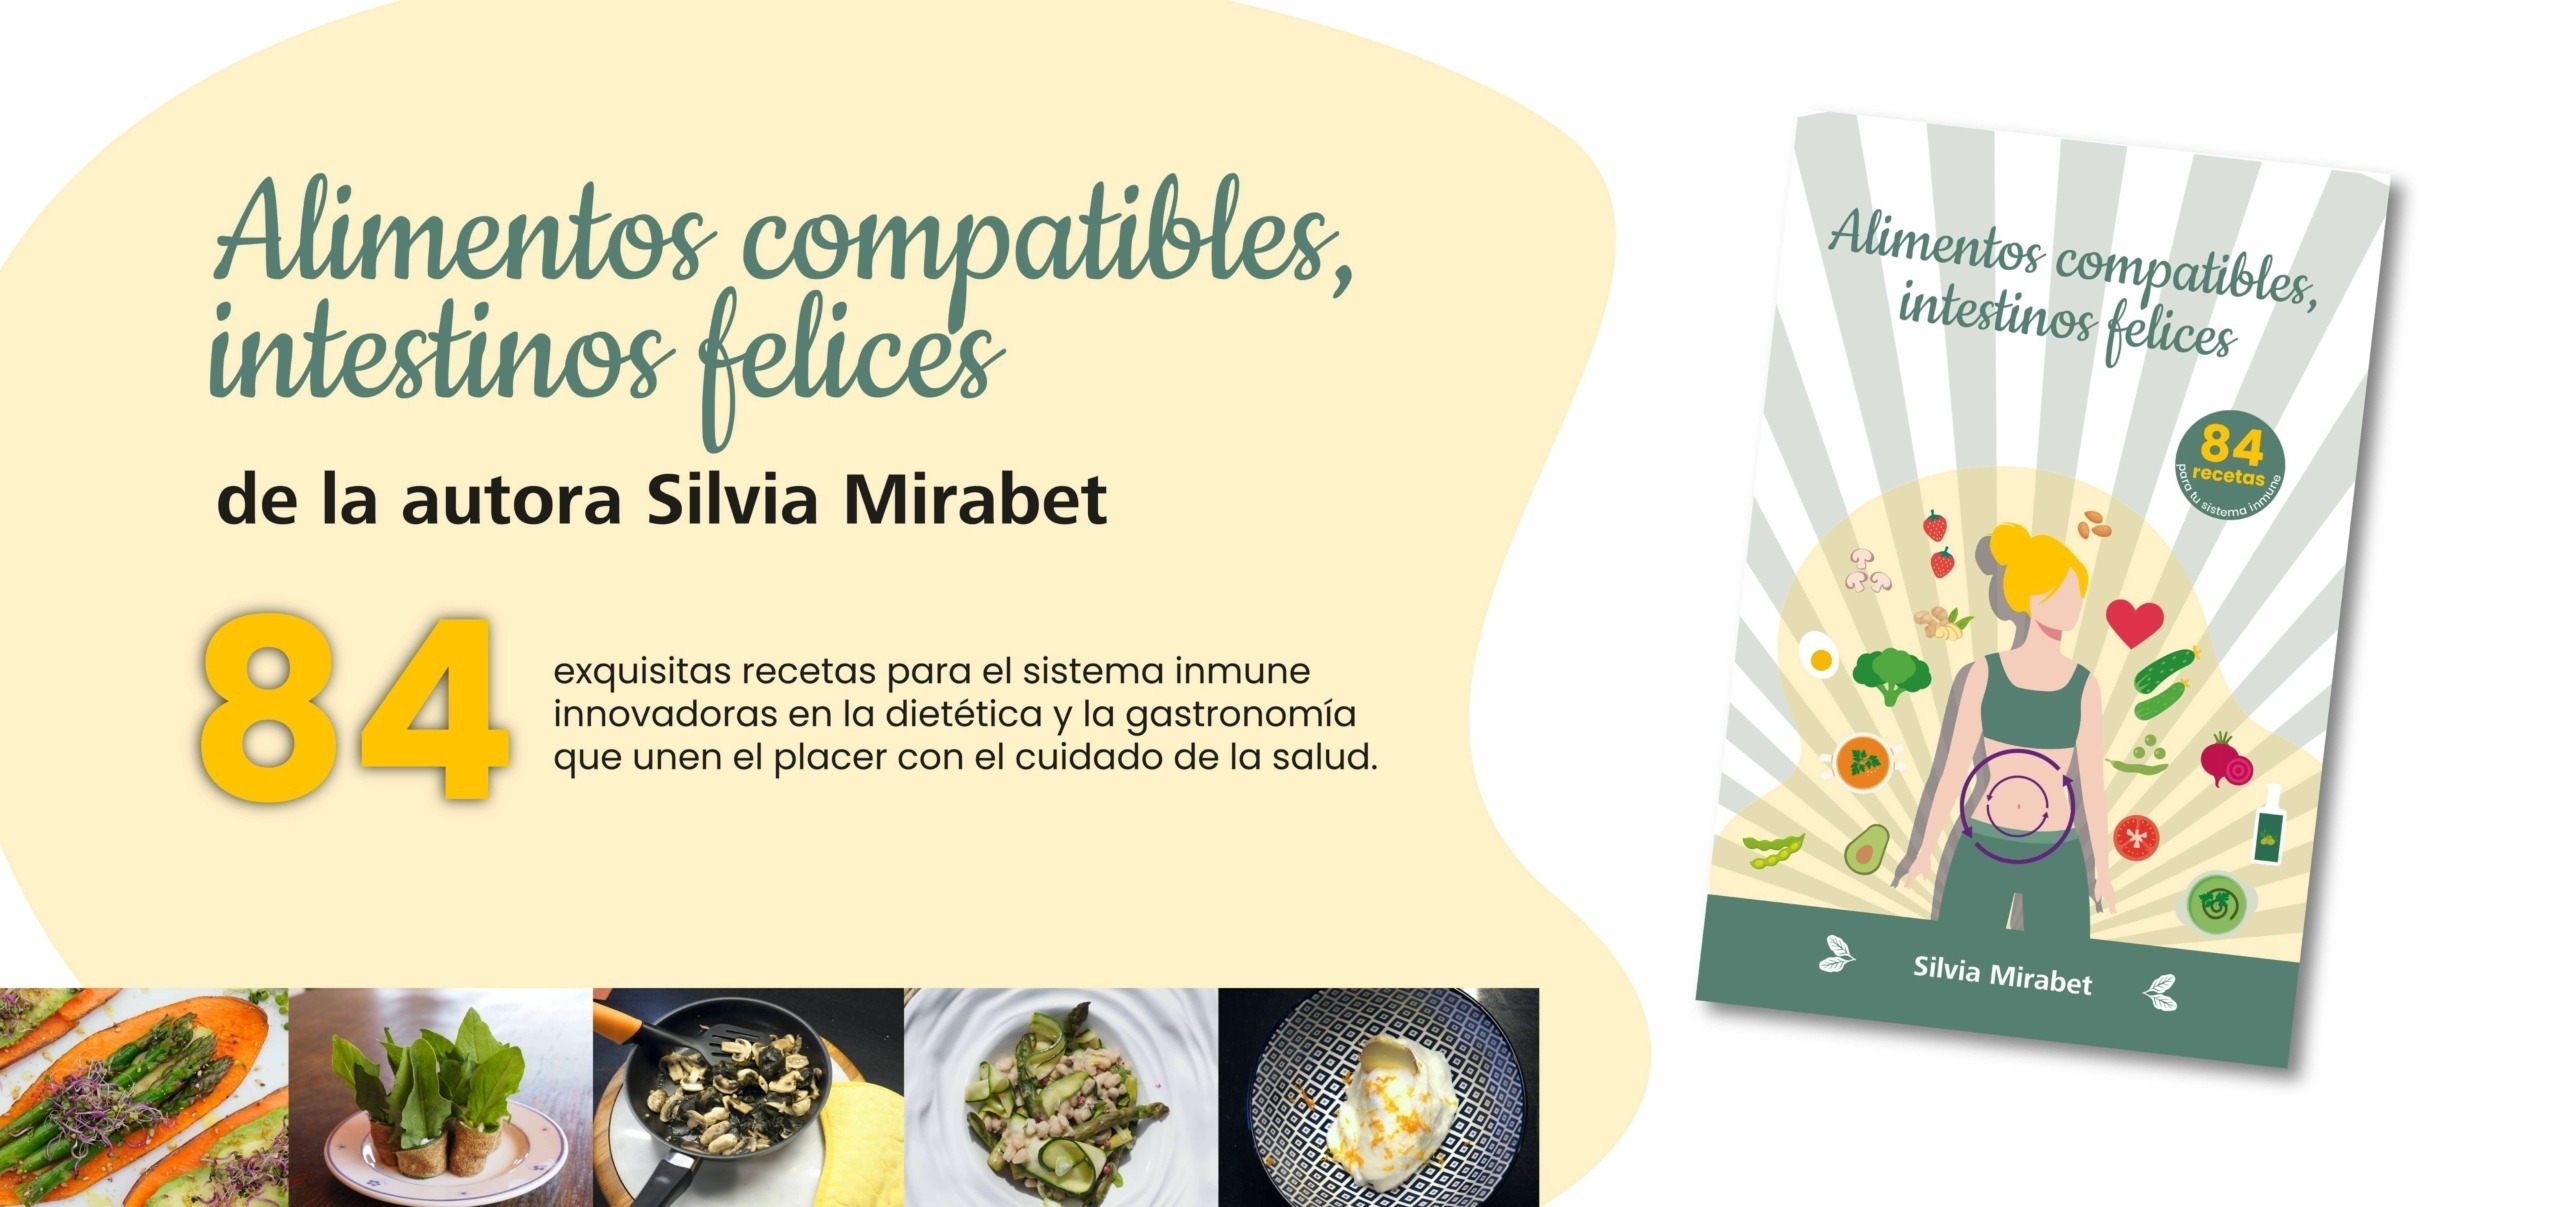 84 exquisitas recetas de Silvia Mirabet para el sistema inmune.